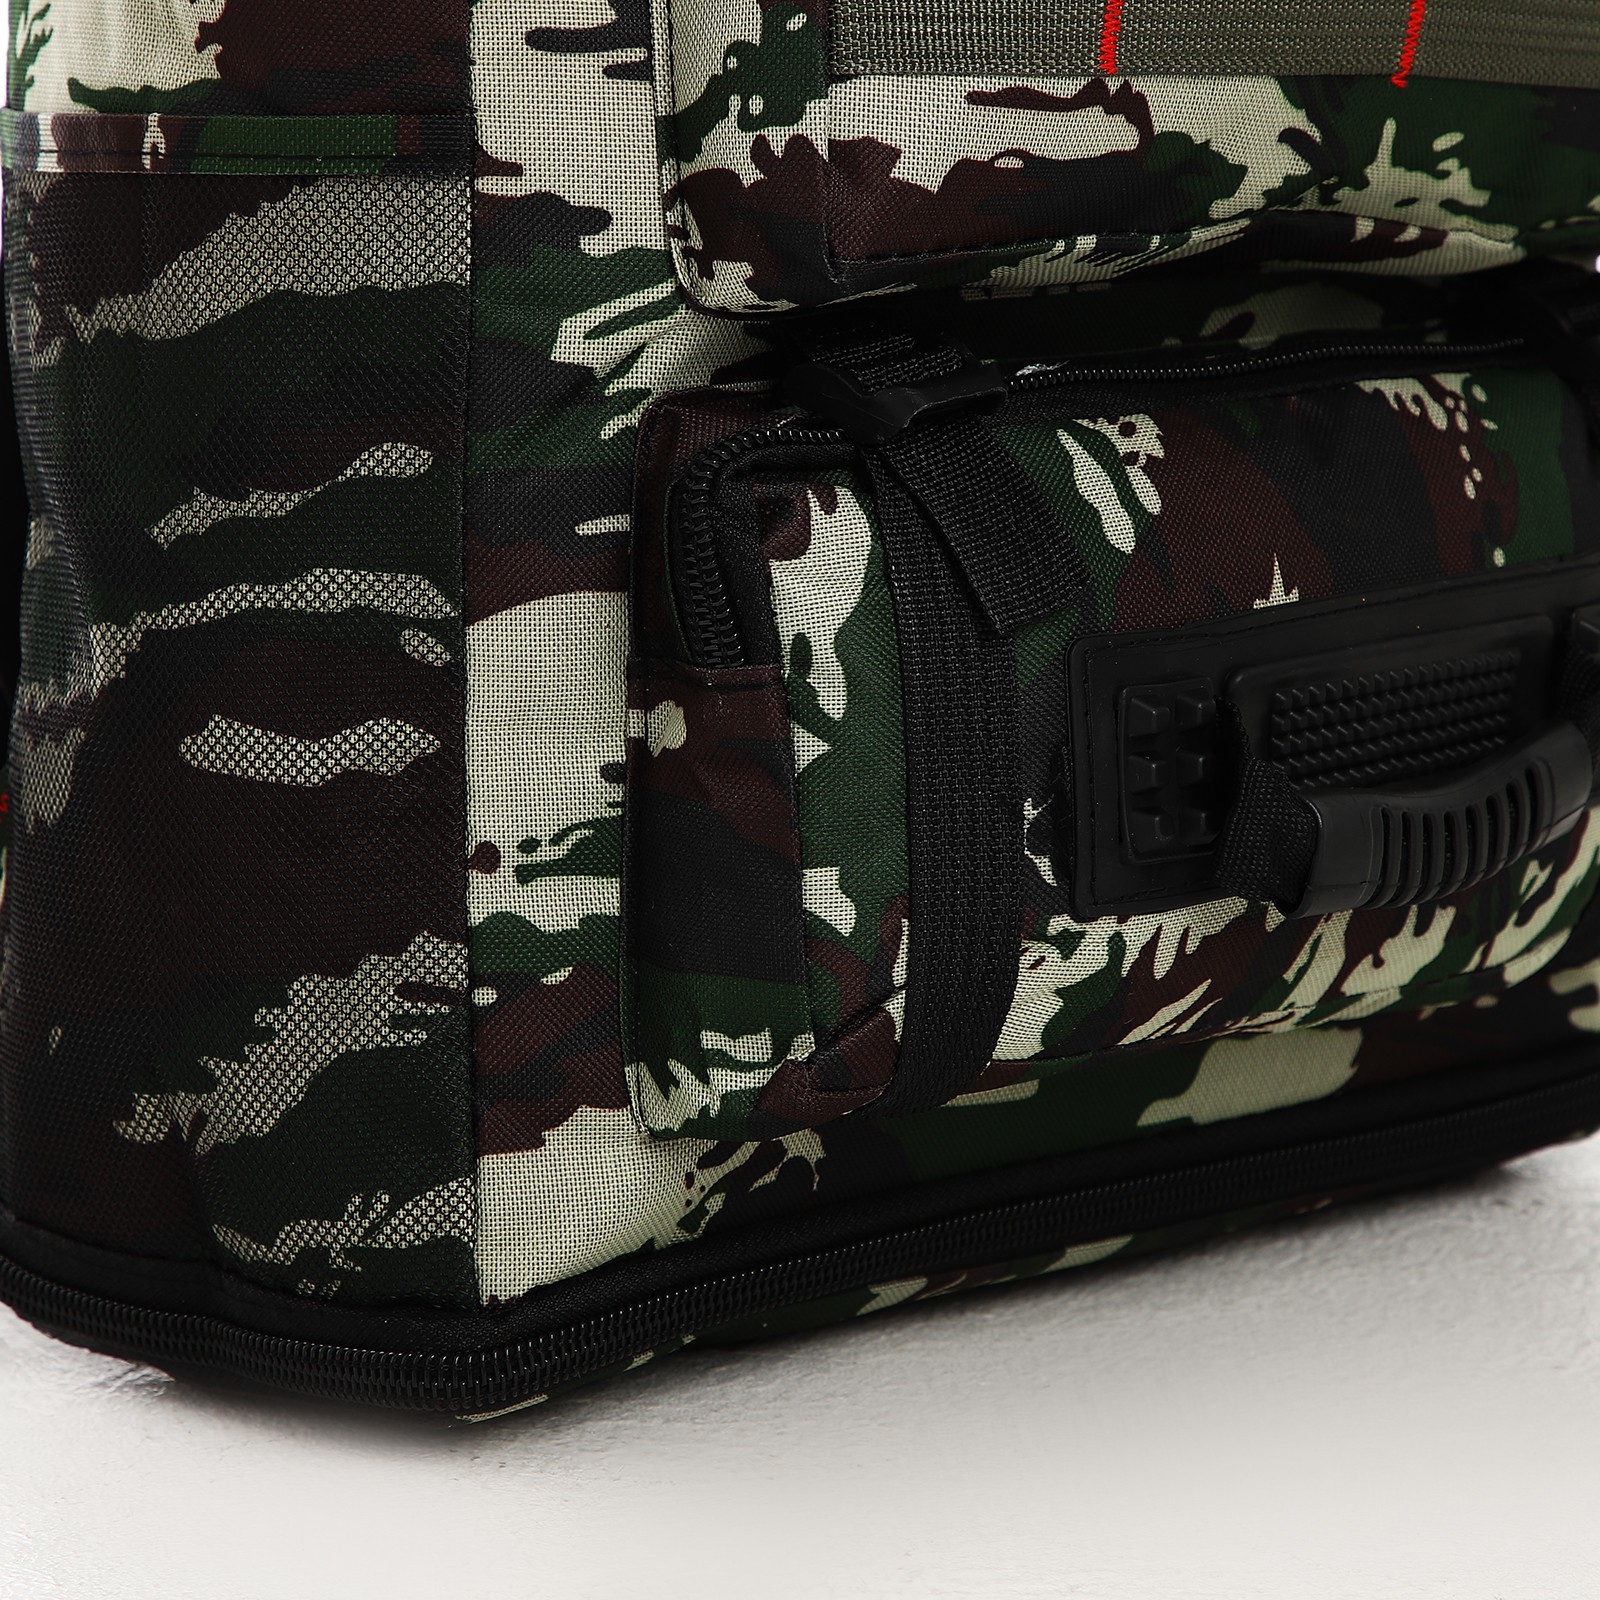 Рюкзак туристический на молнии, с увеличением, 4 наружных кармана, цвет зелёный 9868550